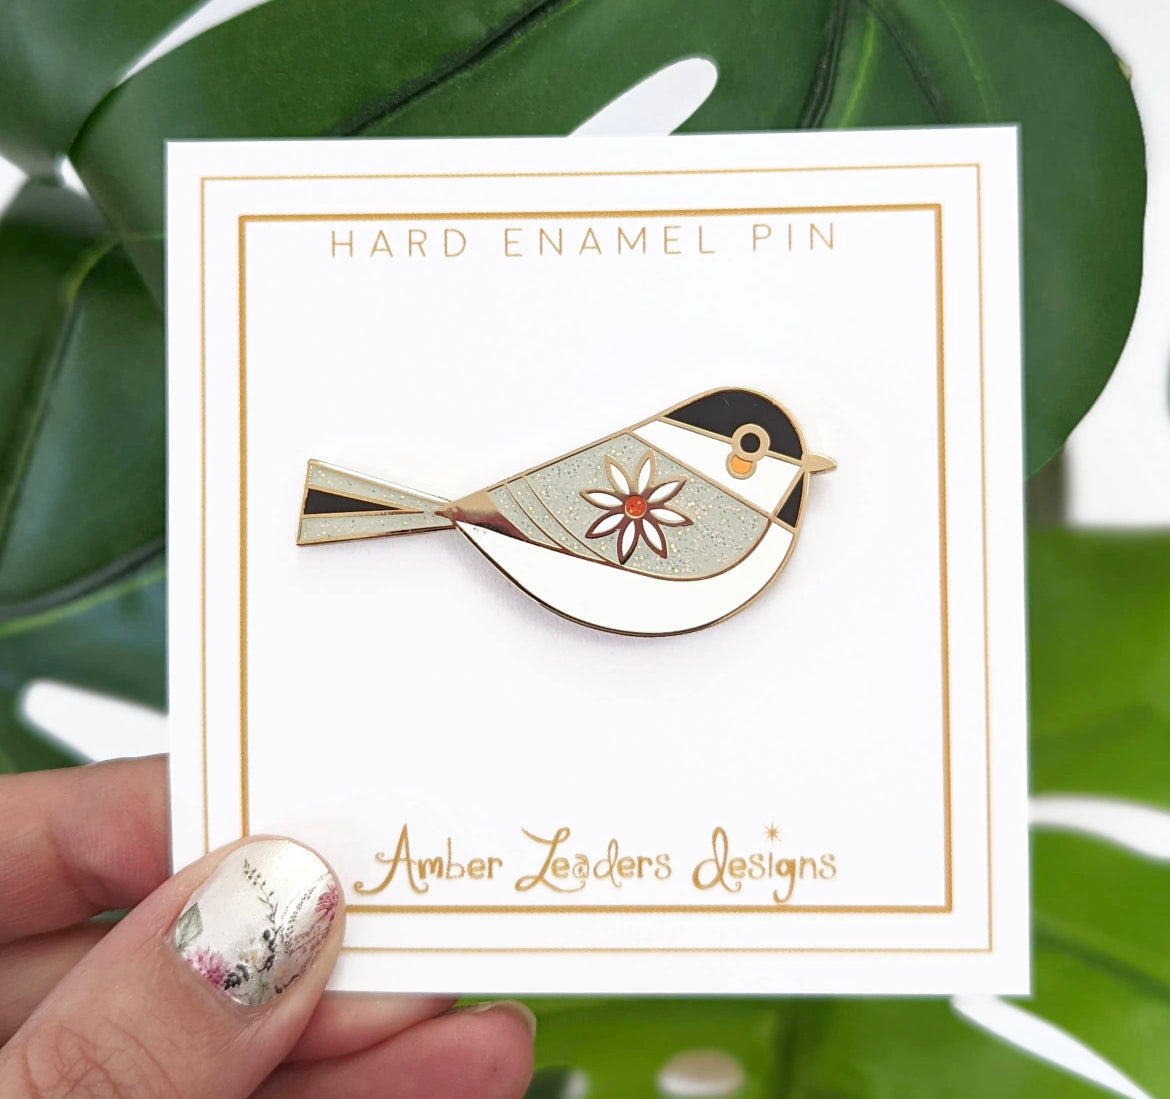 Enameled Pins by Amber Leaders Designs